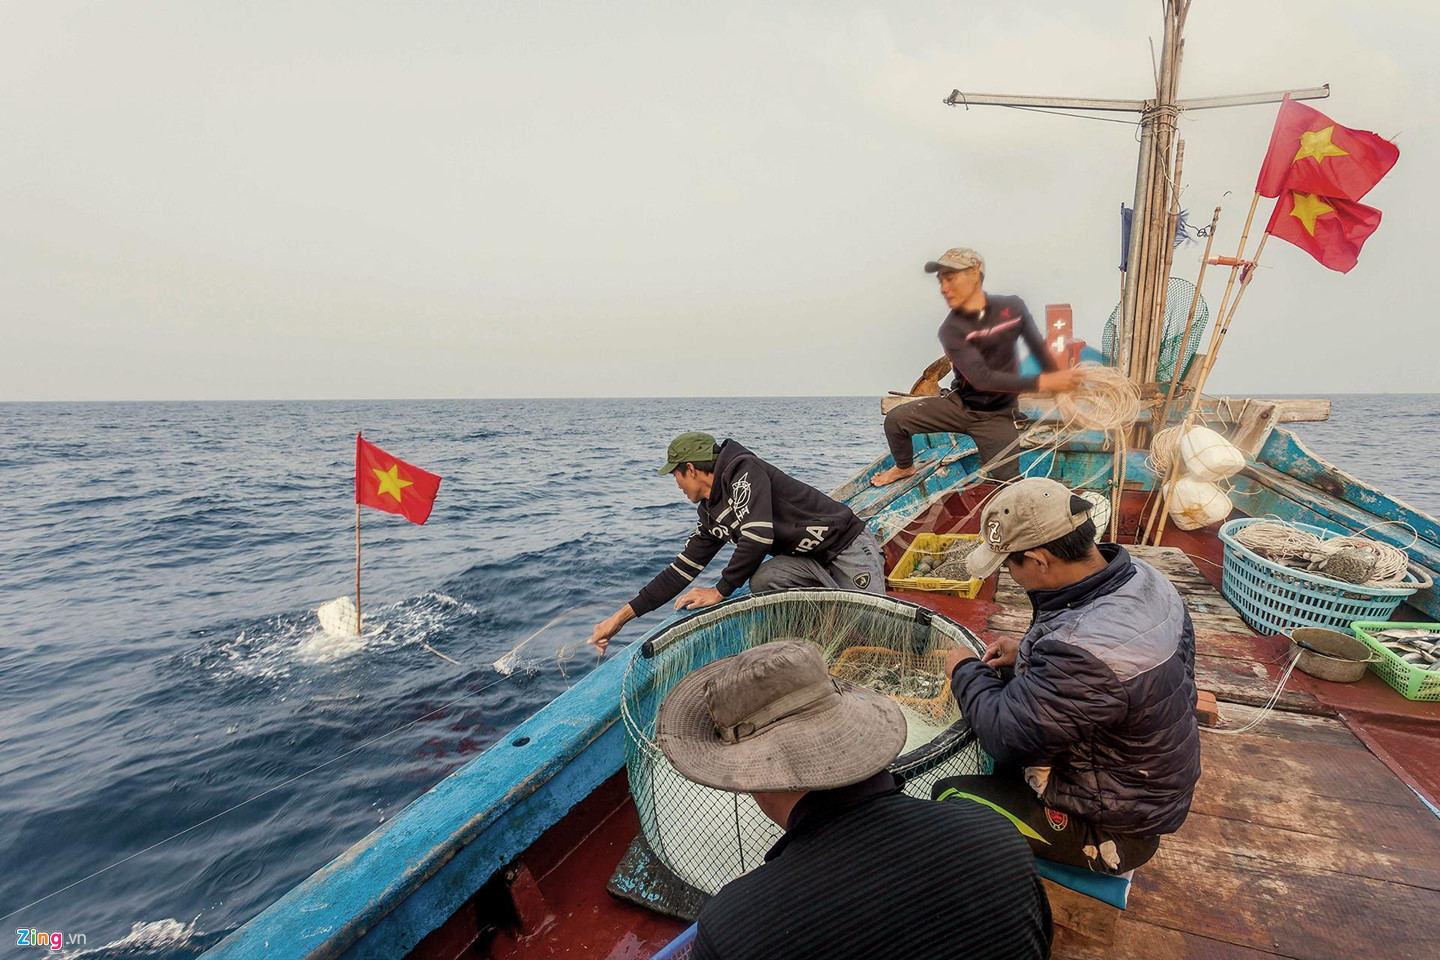 Hệ thống chưng cất nước ngọt: Giải “cơn khát” trên tàu đánh cá xa bờ